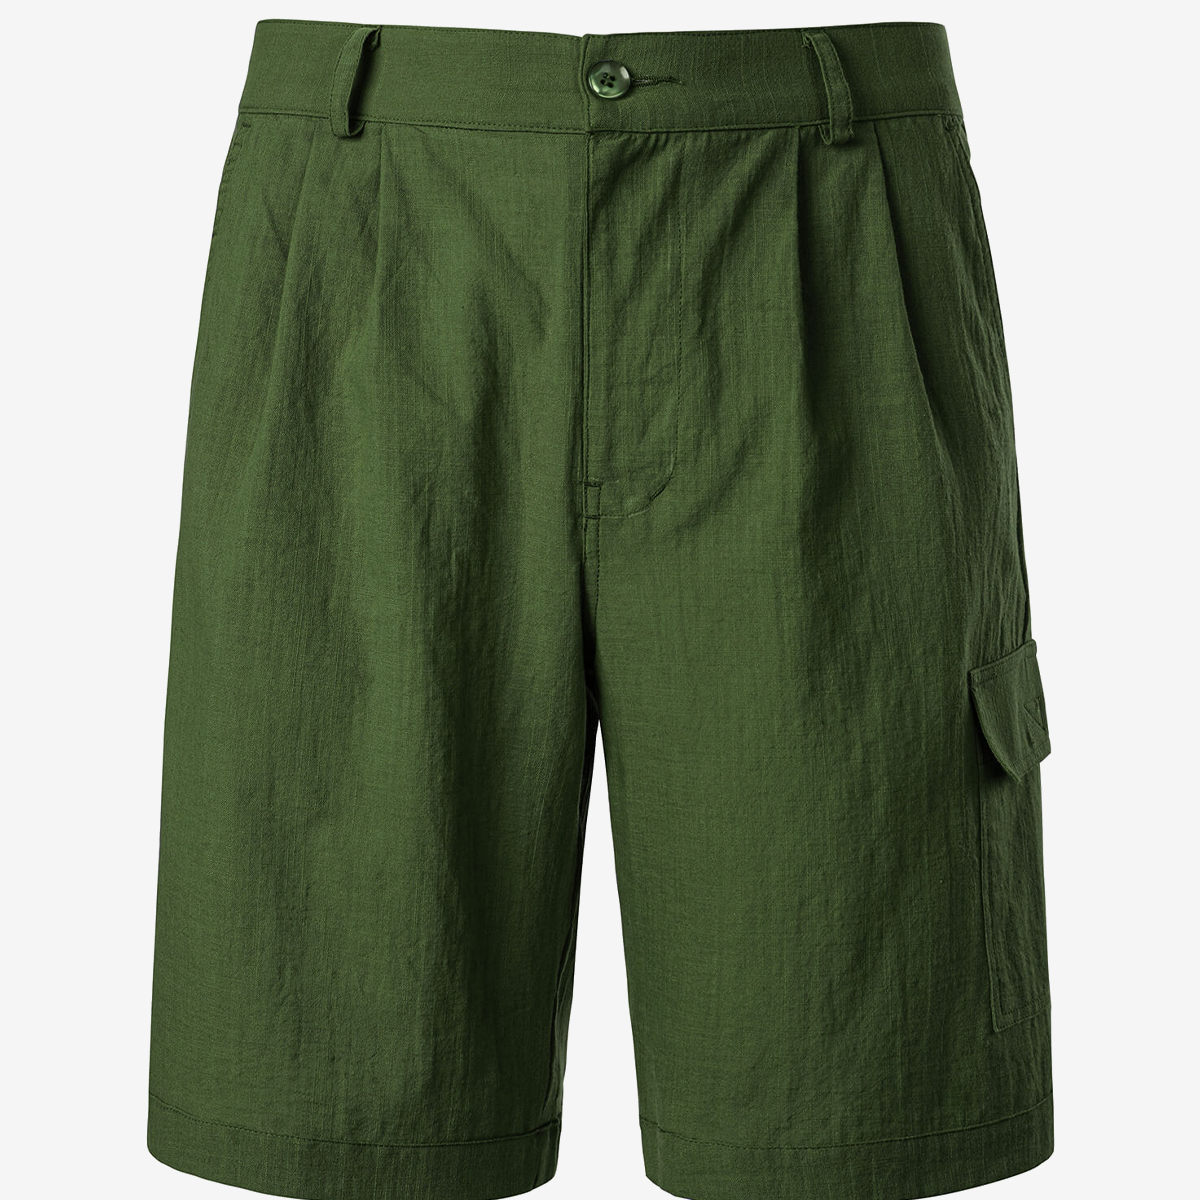 Men's Cotton Linen Casual Summer Beach Shorts